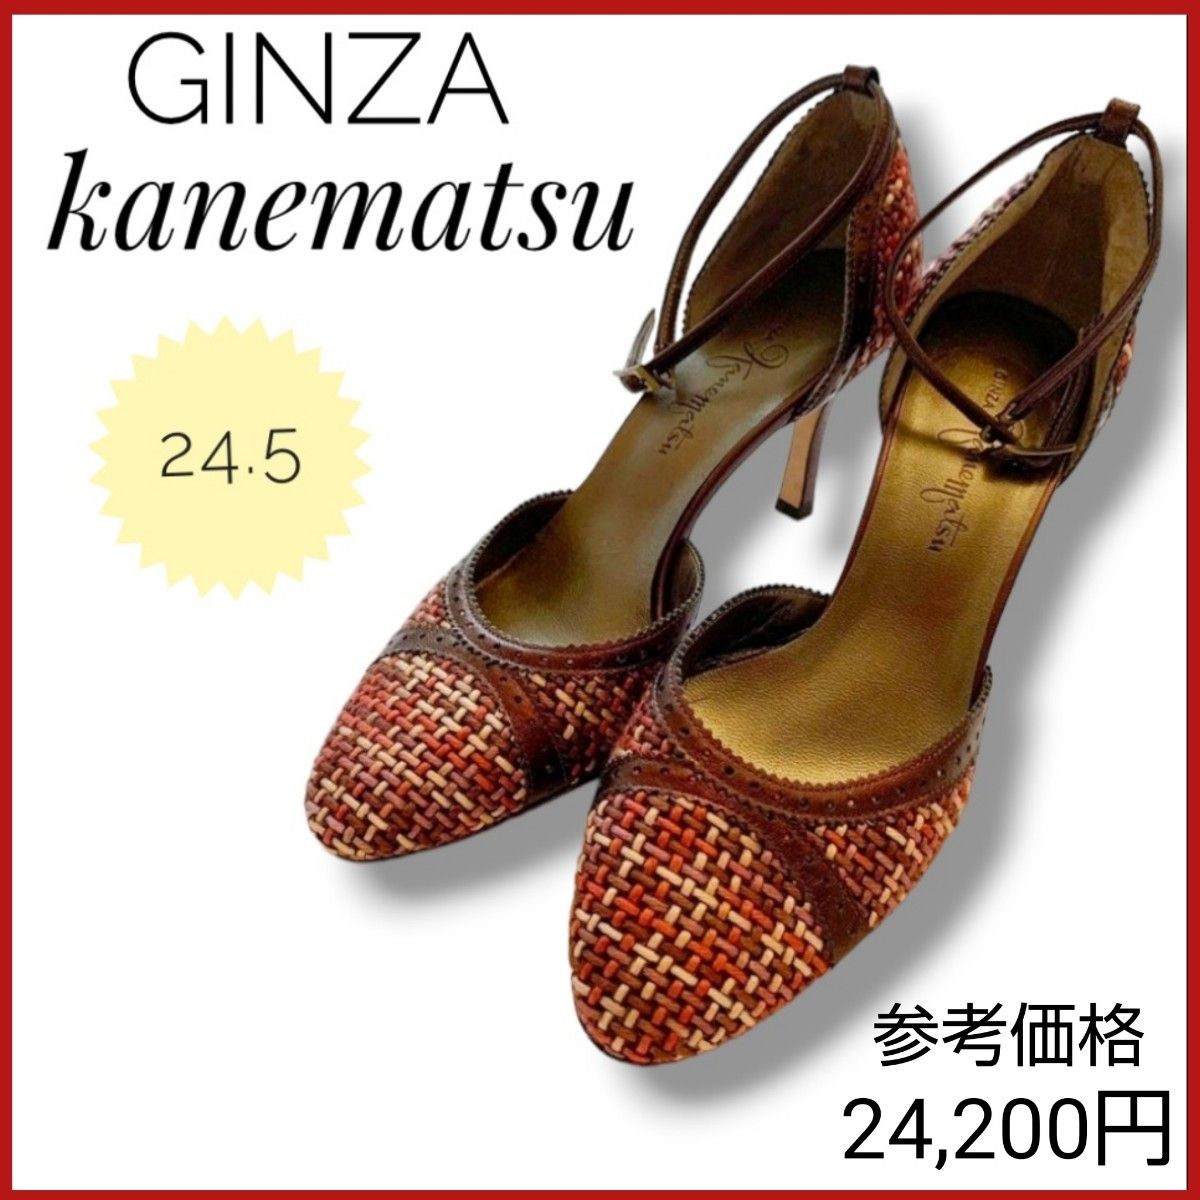 【美品】GINZA kanematsu 銀座かねまつ パンプス ピンヒール 24.5cm シューズ 婦人靴